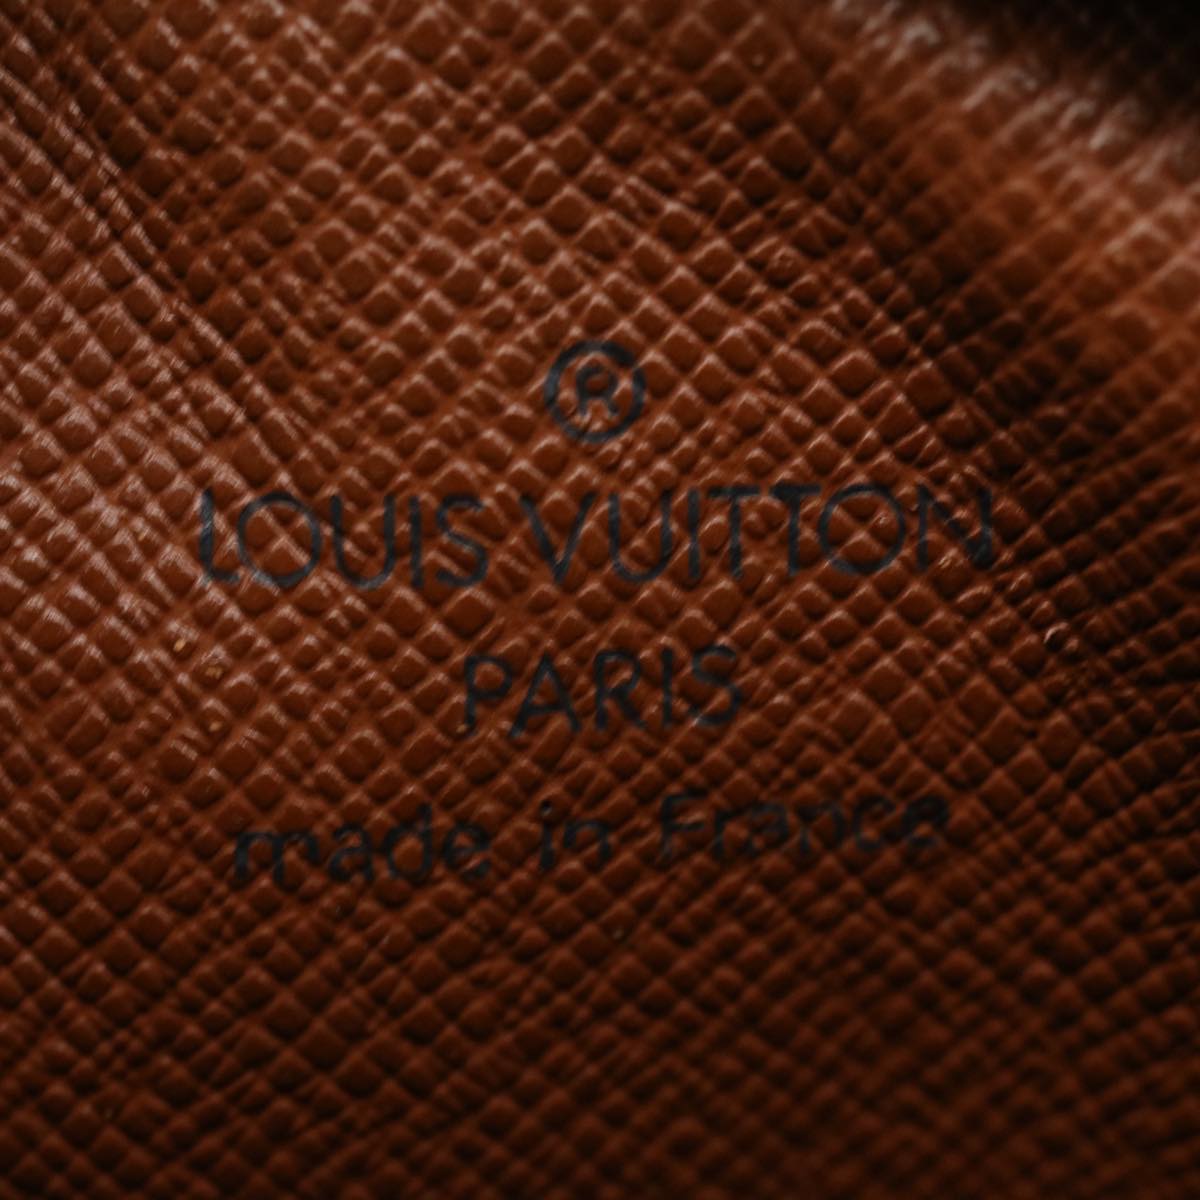 LOUIS VUITTON Monogram Amazon Shoulder Bag M45236 LV Auth fm1479